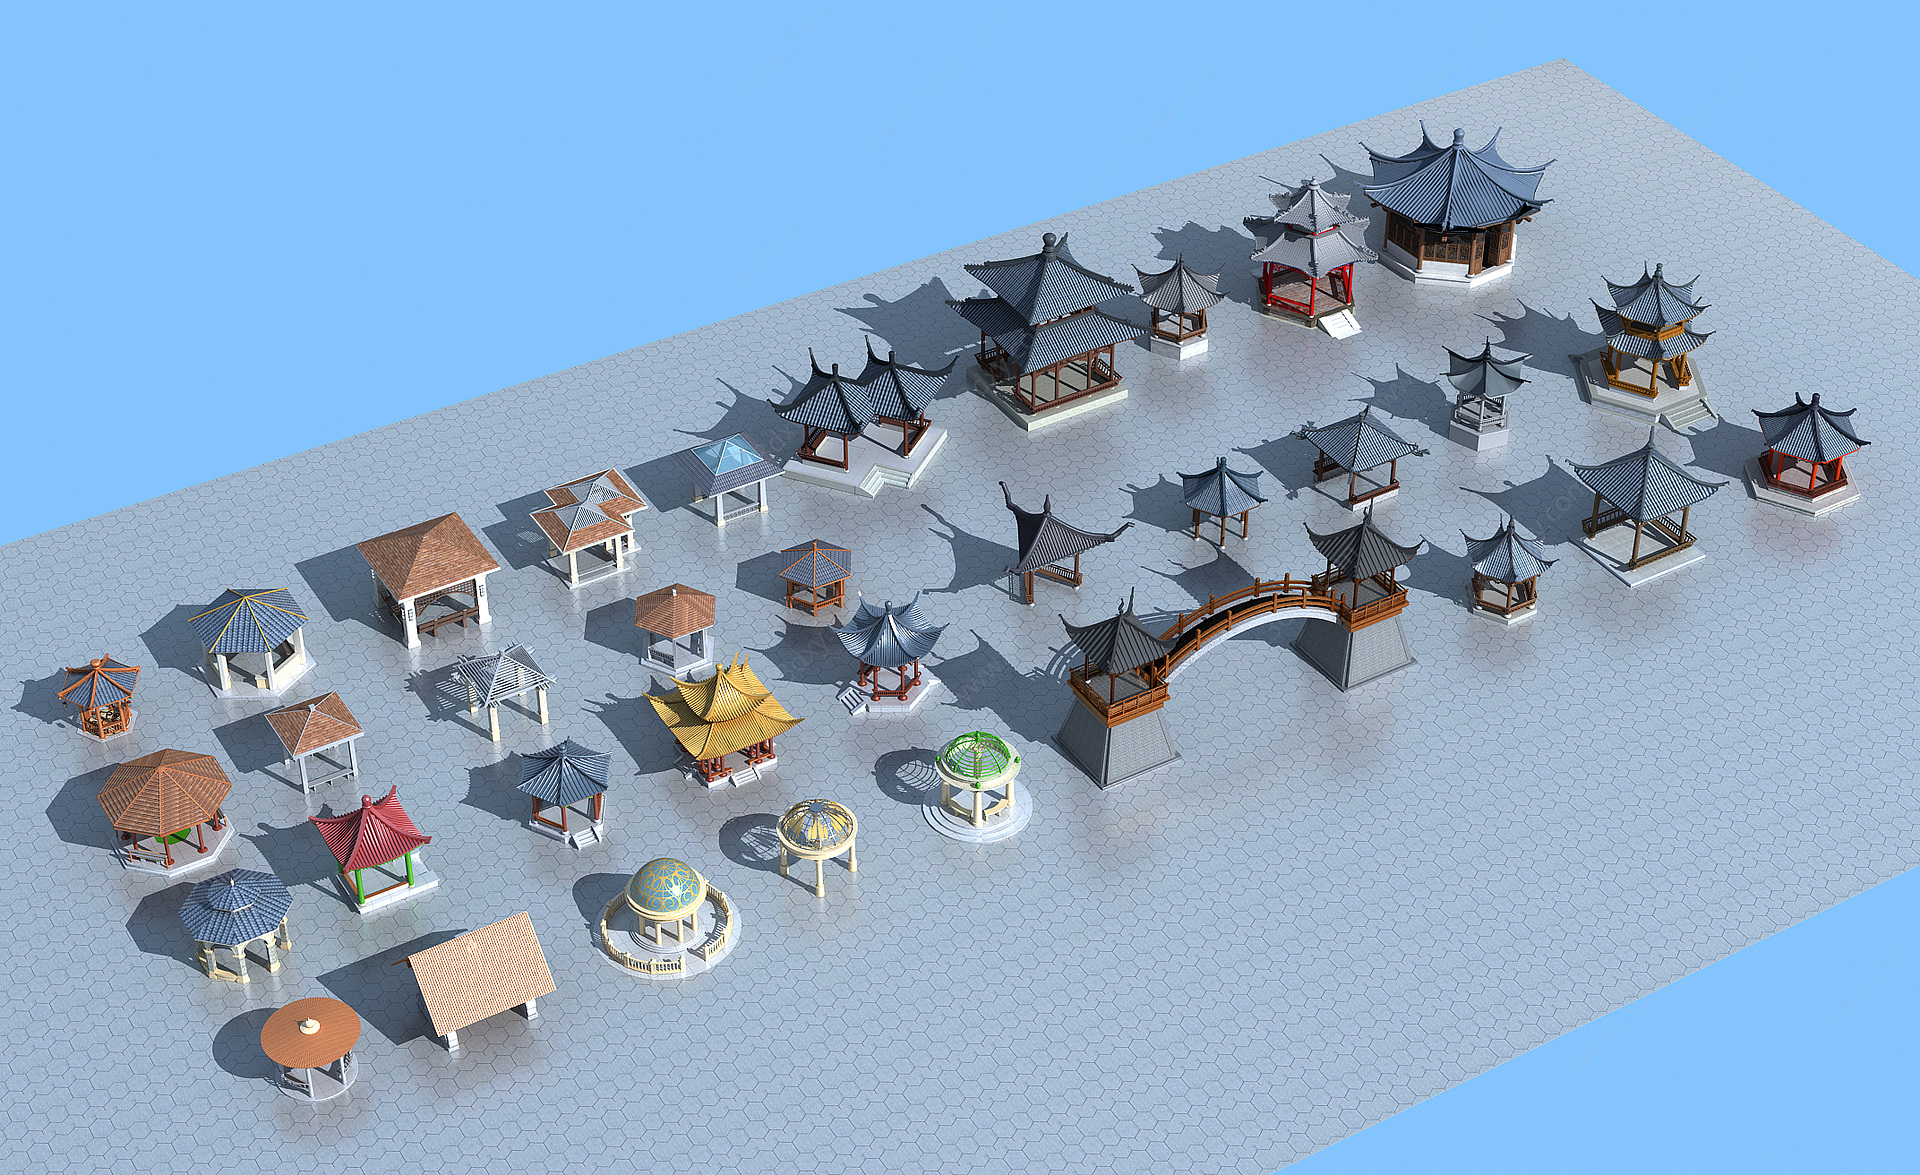 中式凉亭3D模型